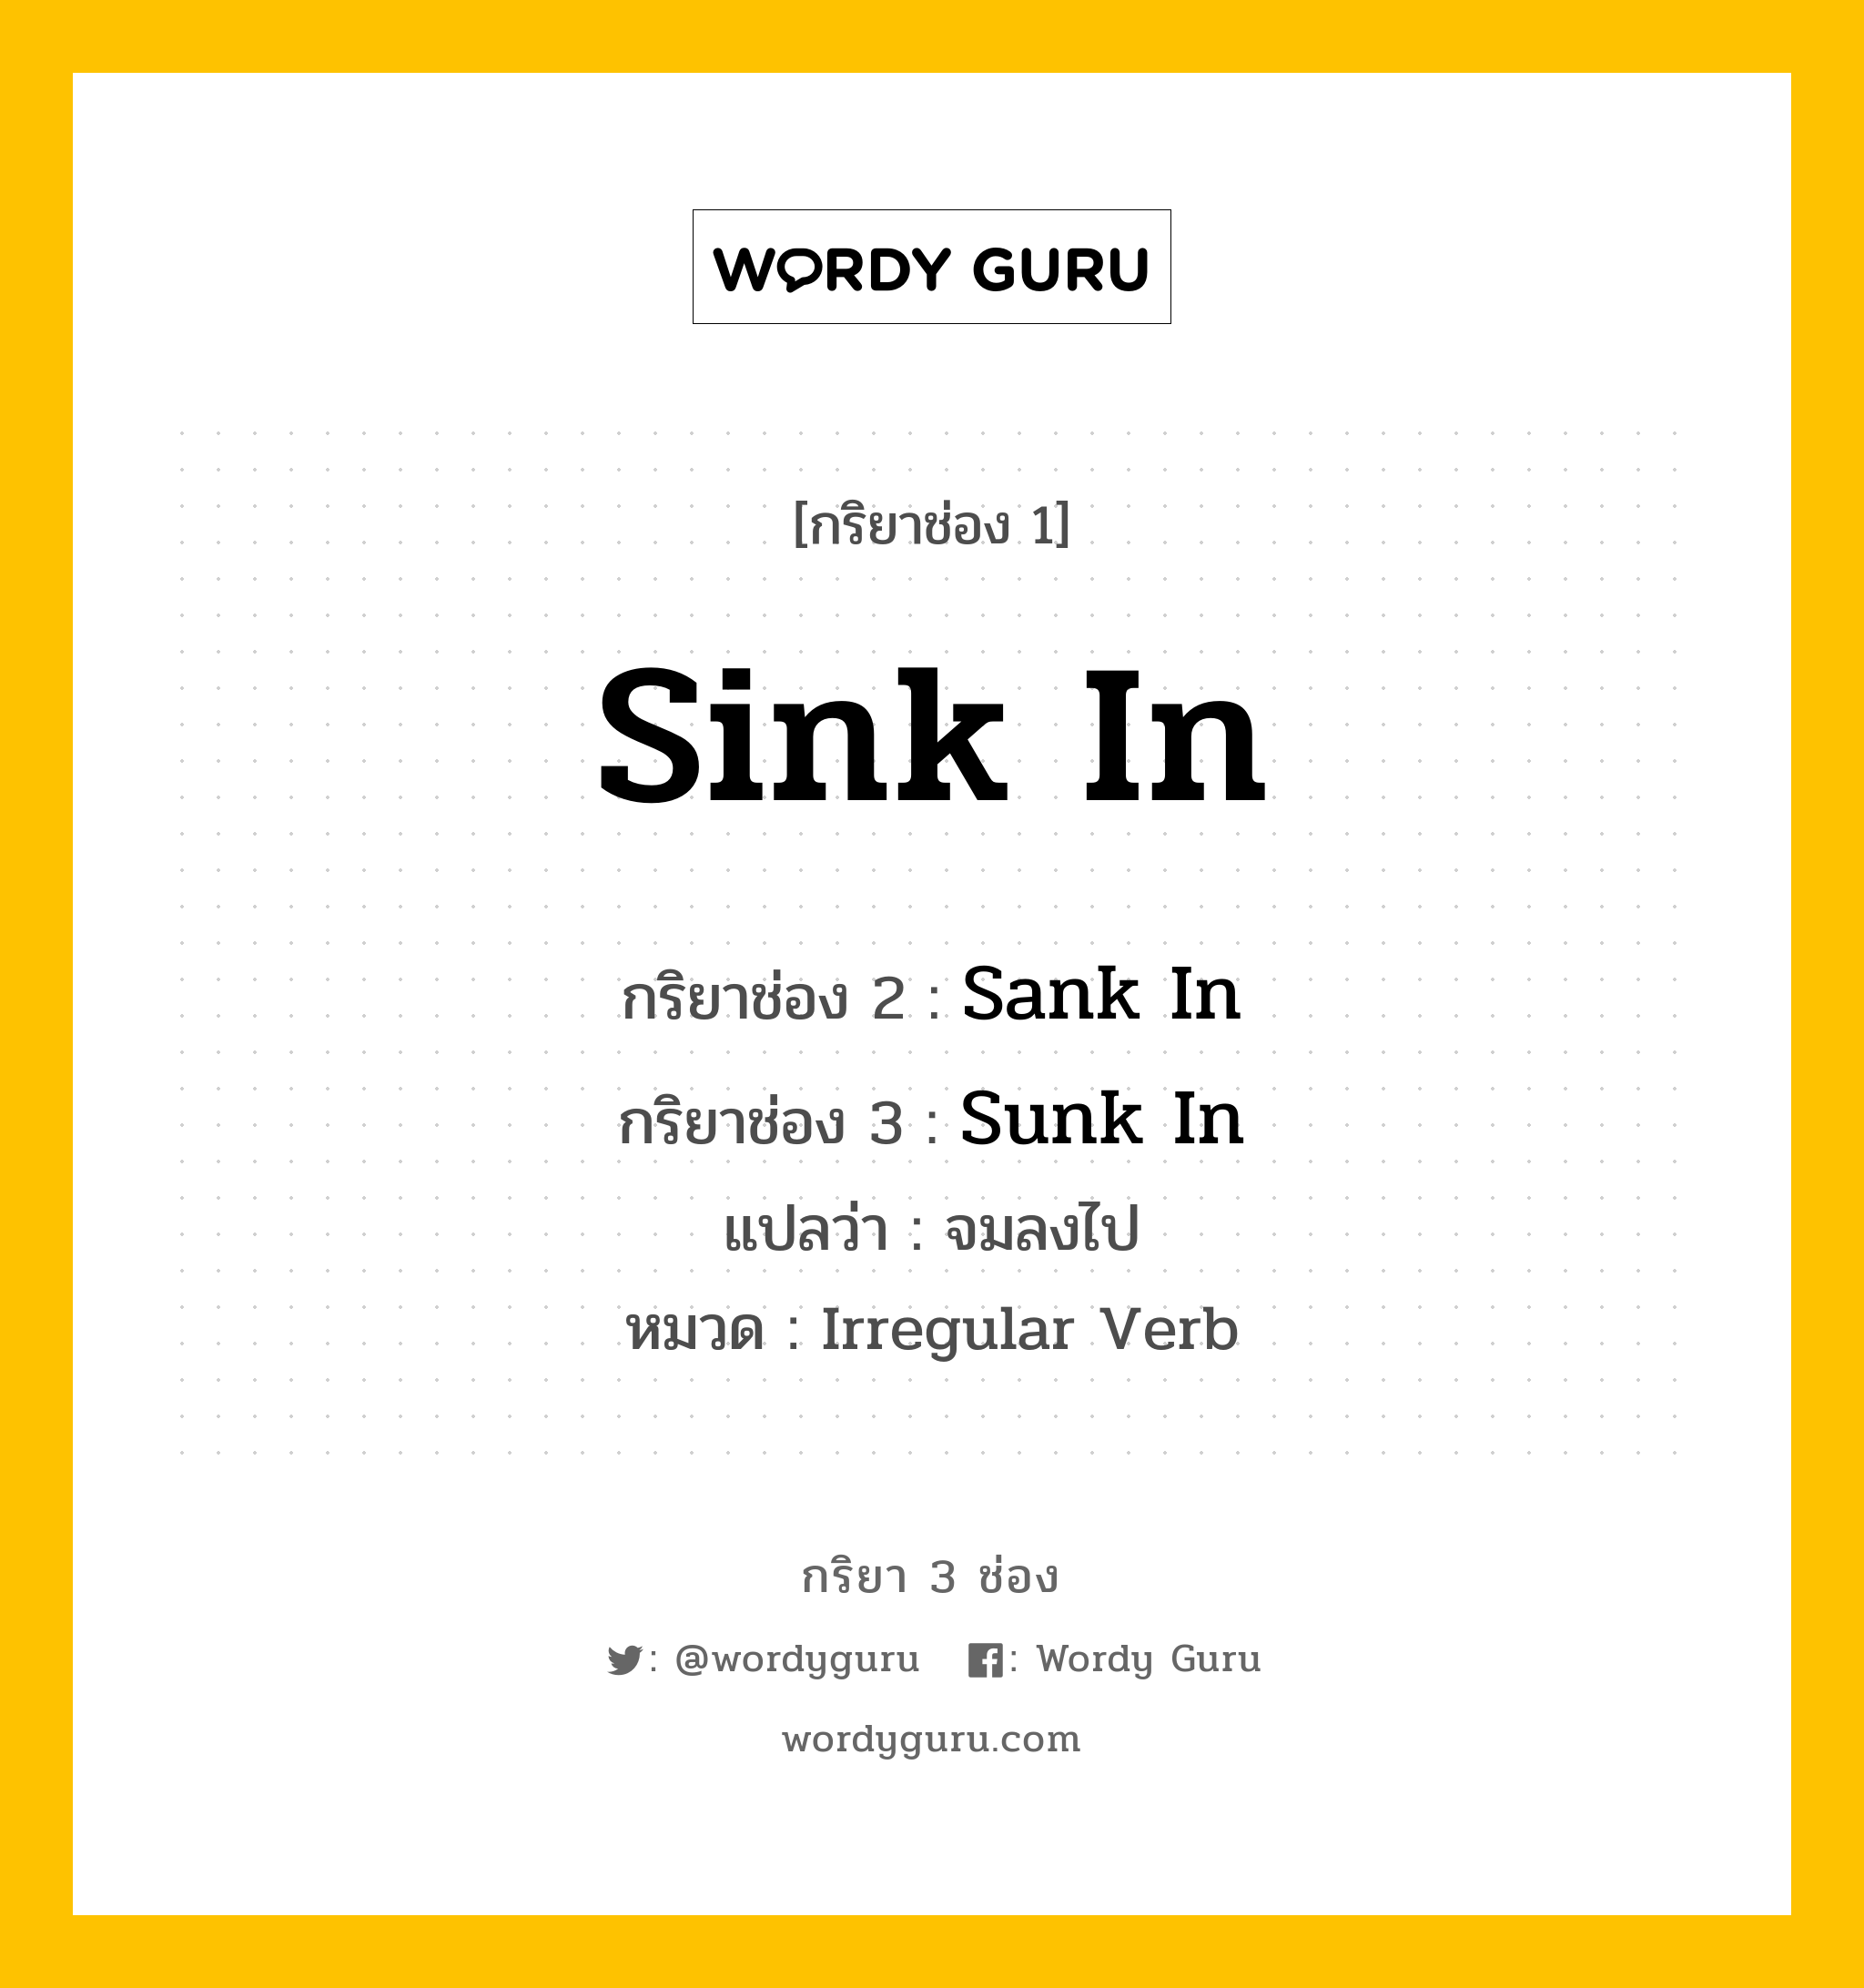 กริยา 3 ช่อง: Sink In ช่อง 2 Sink In ช่อง 3 คืออะไร, กริยาช่อง 1 Sink In กริยาช่อง 2 Sank In กริยาช่อง 3 Sunk In แปลว่า จมลงไป หมวด Irregular Verb หมวด Irregular Verb